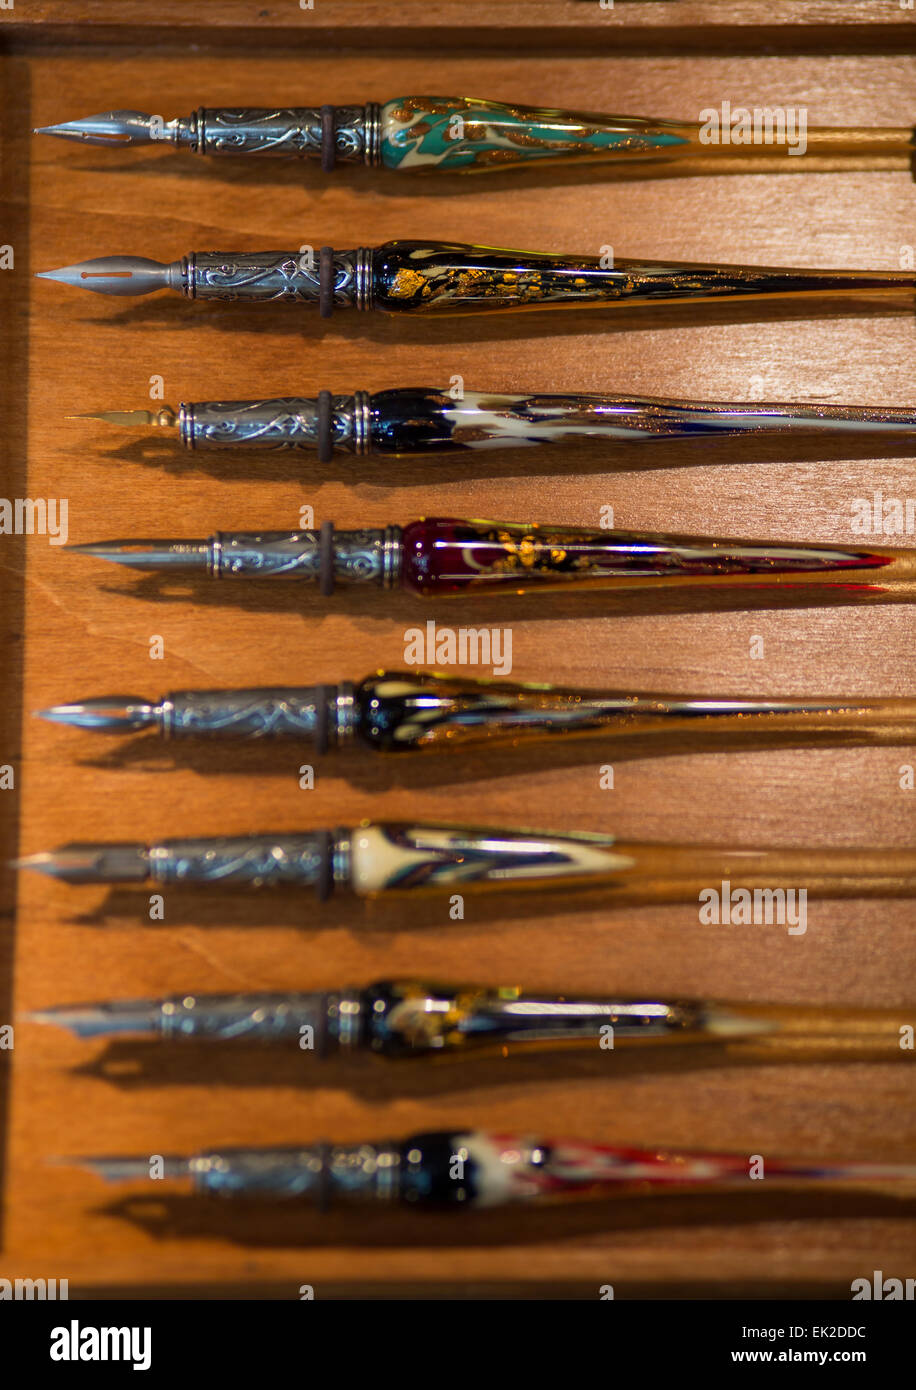 Glass Pens, Venice Italy Stock Photo